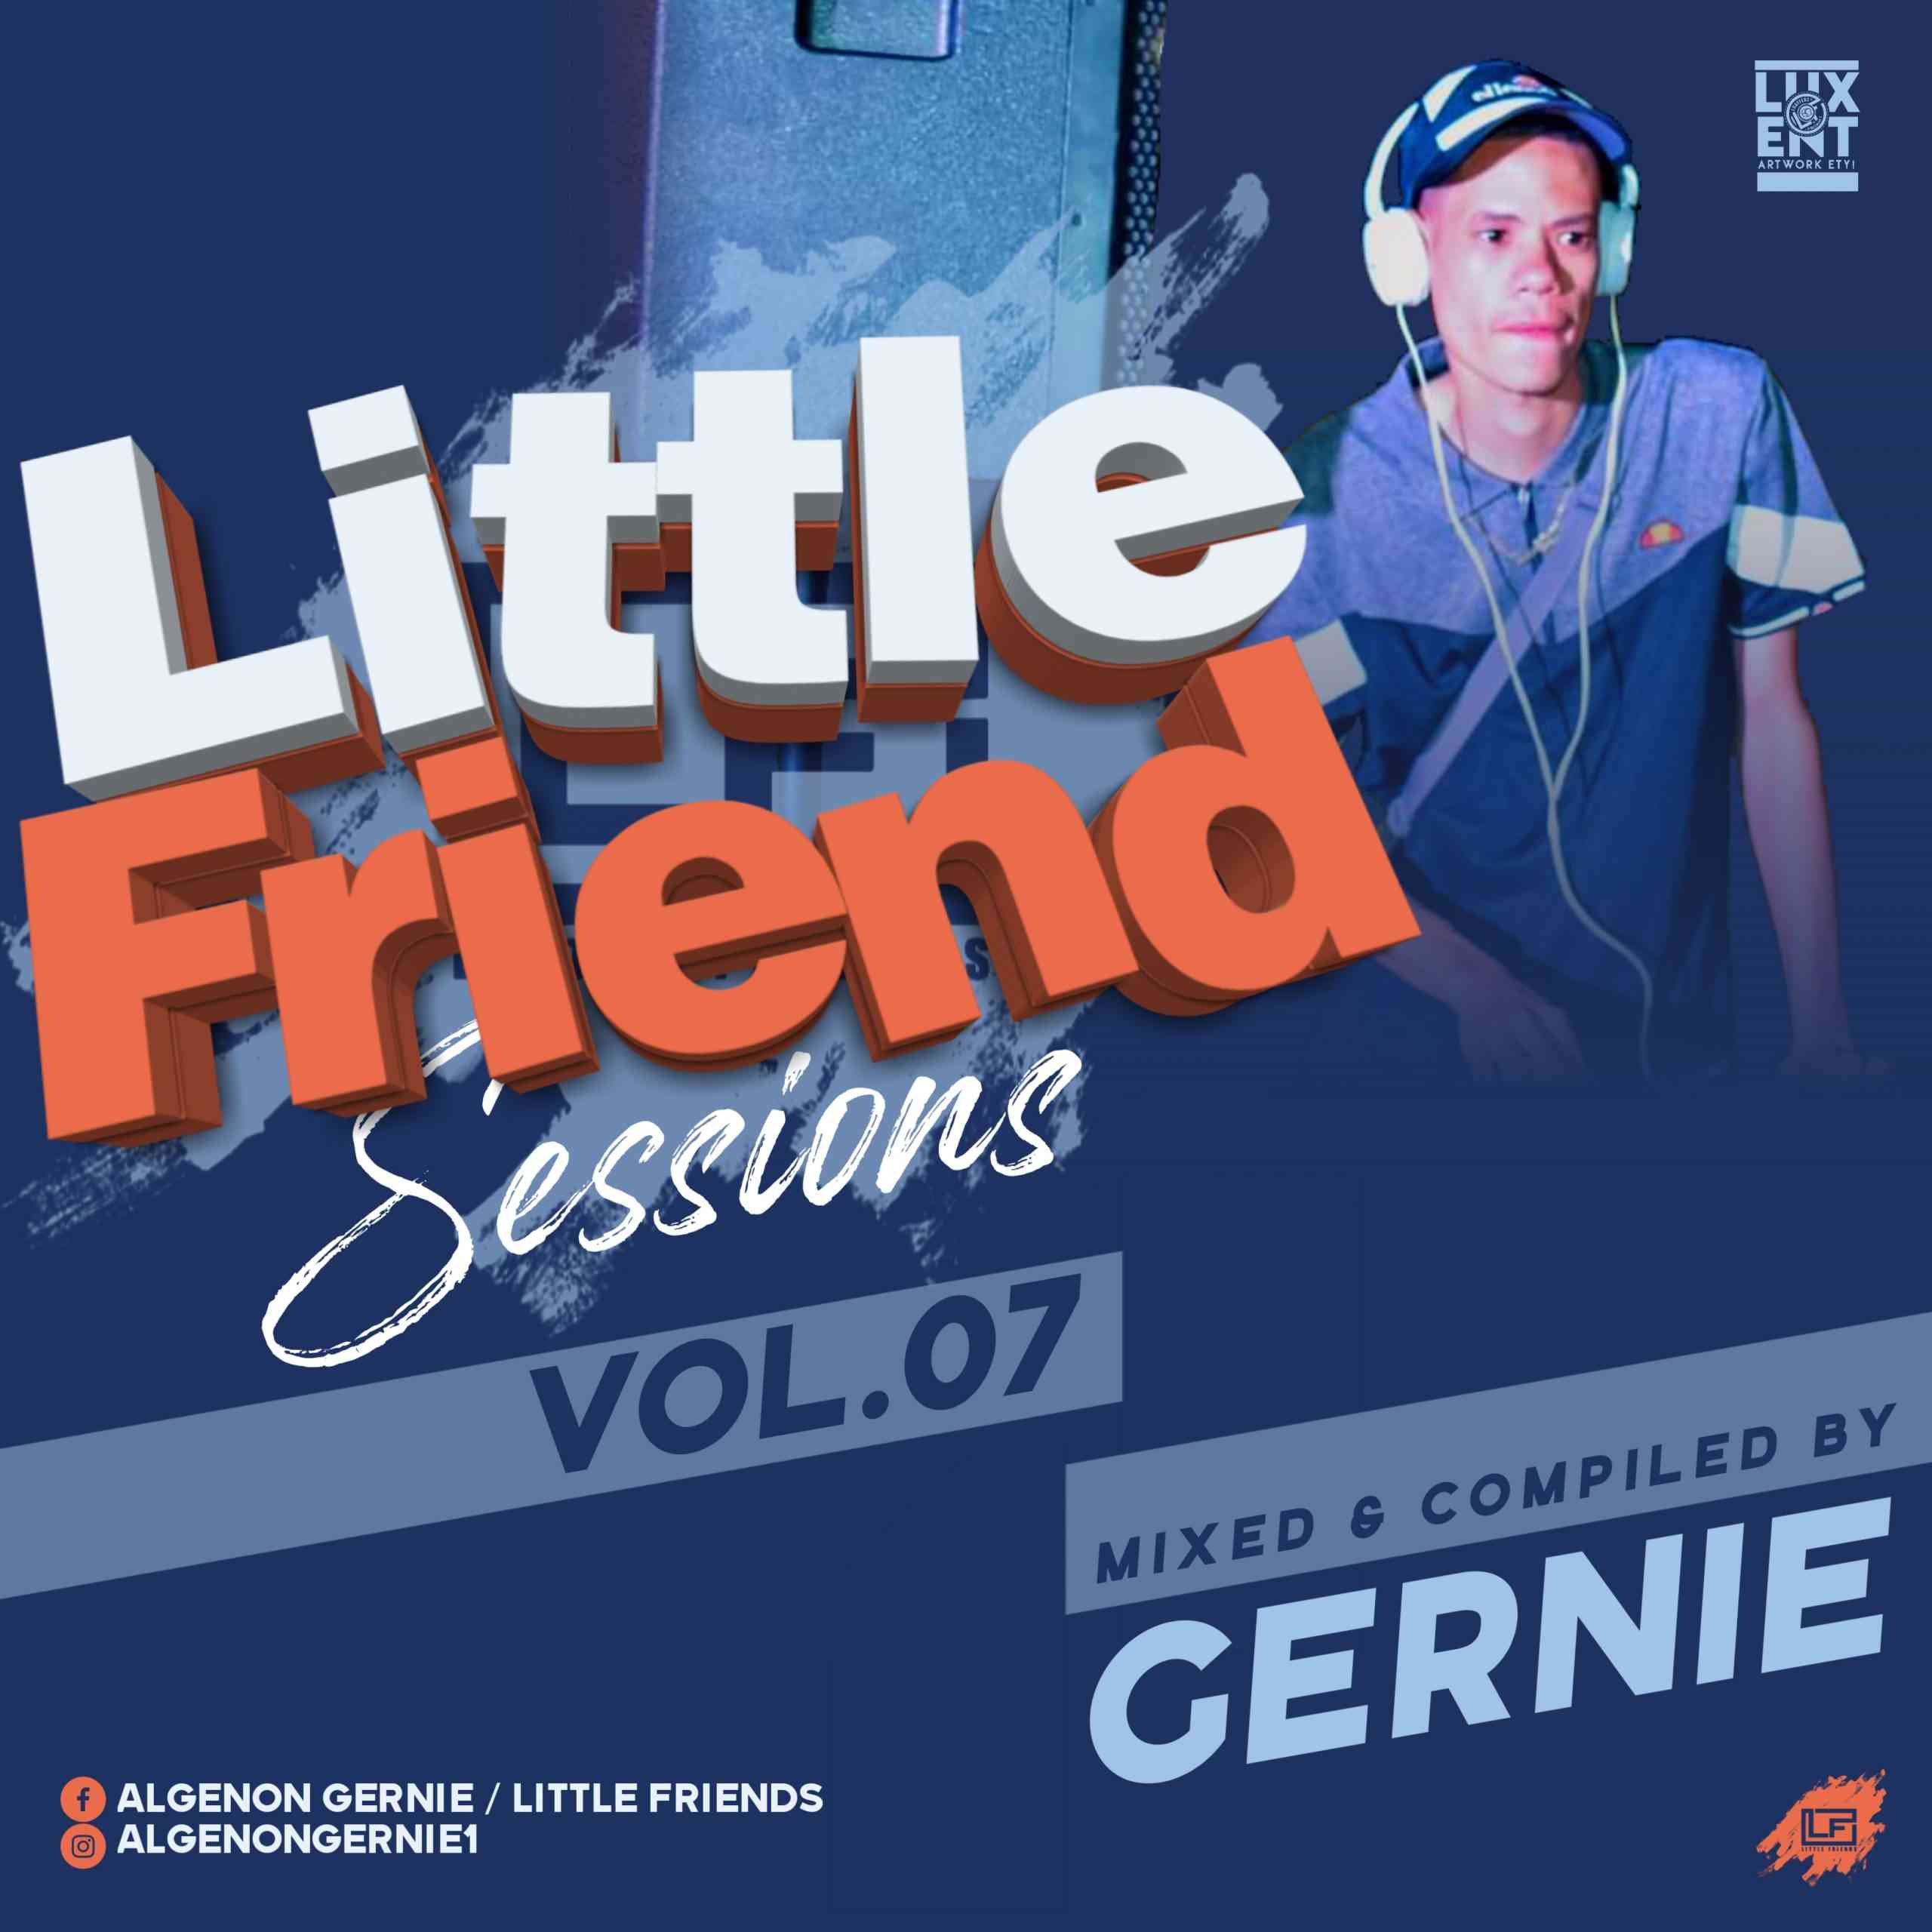 Gernie - Little Friends Sessions Vol. 07 Mix 